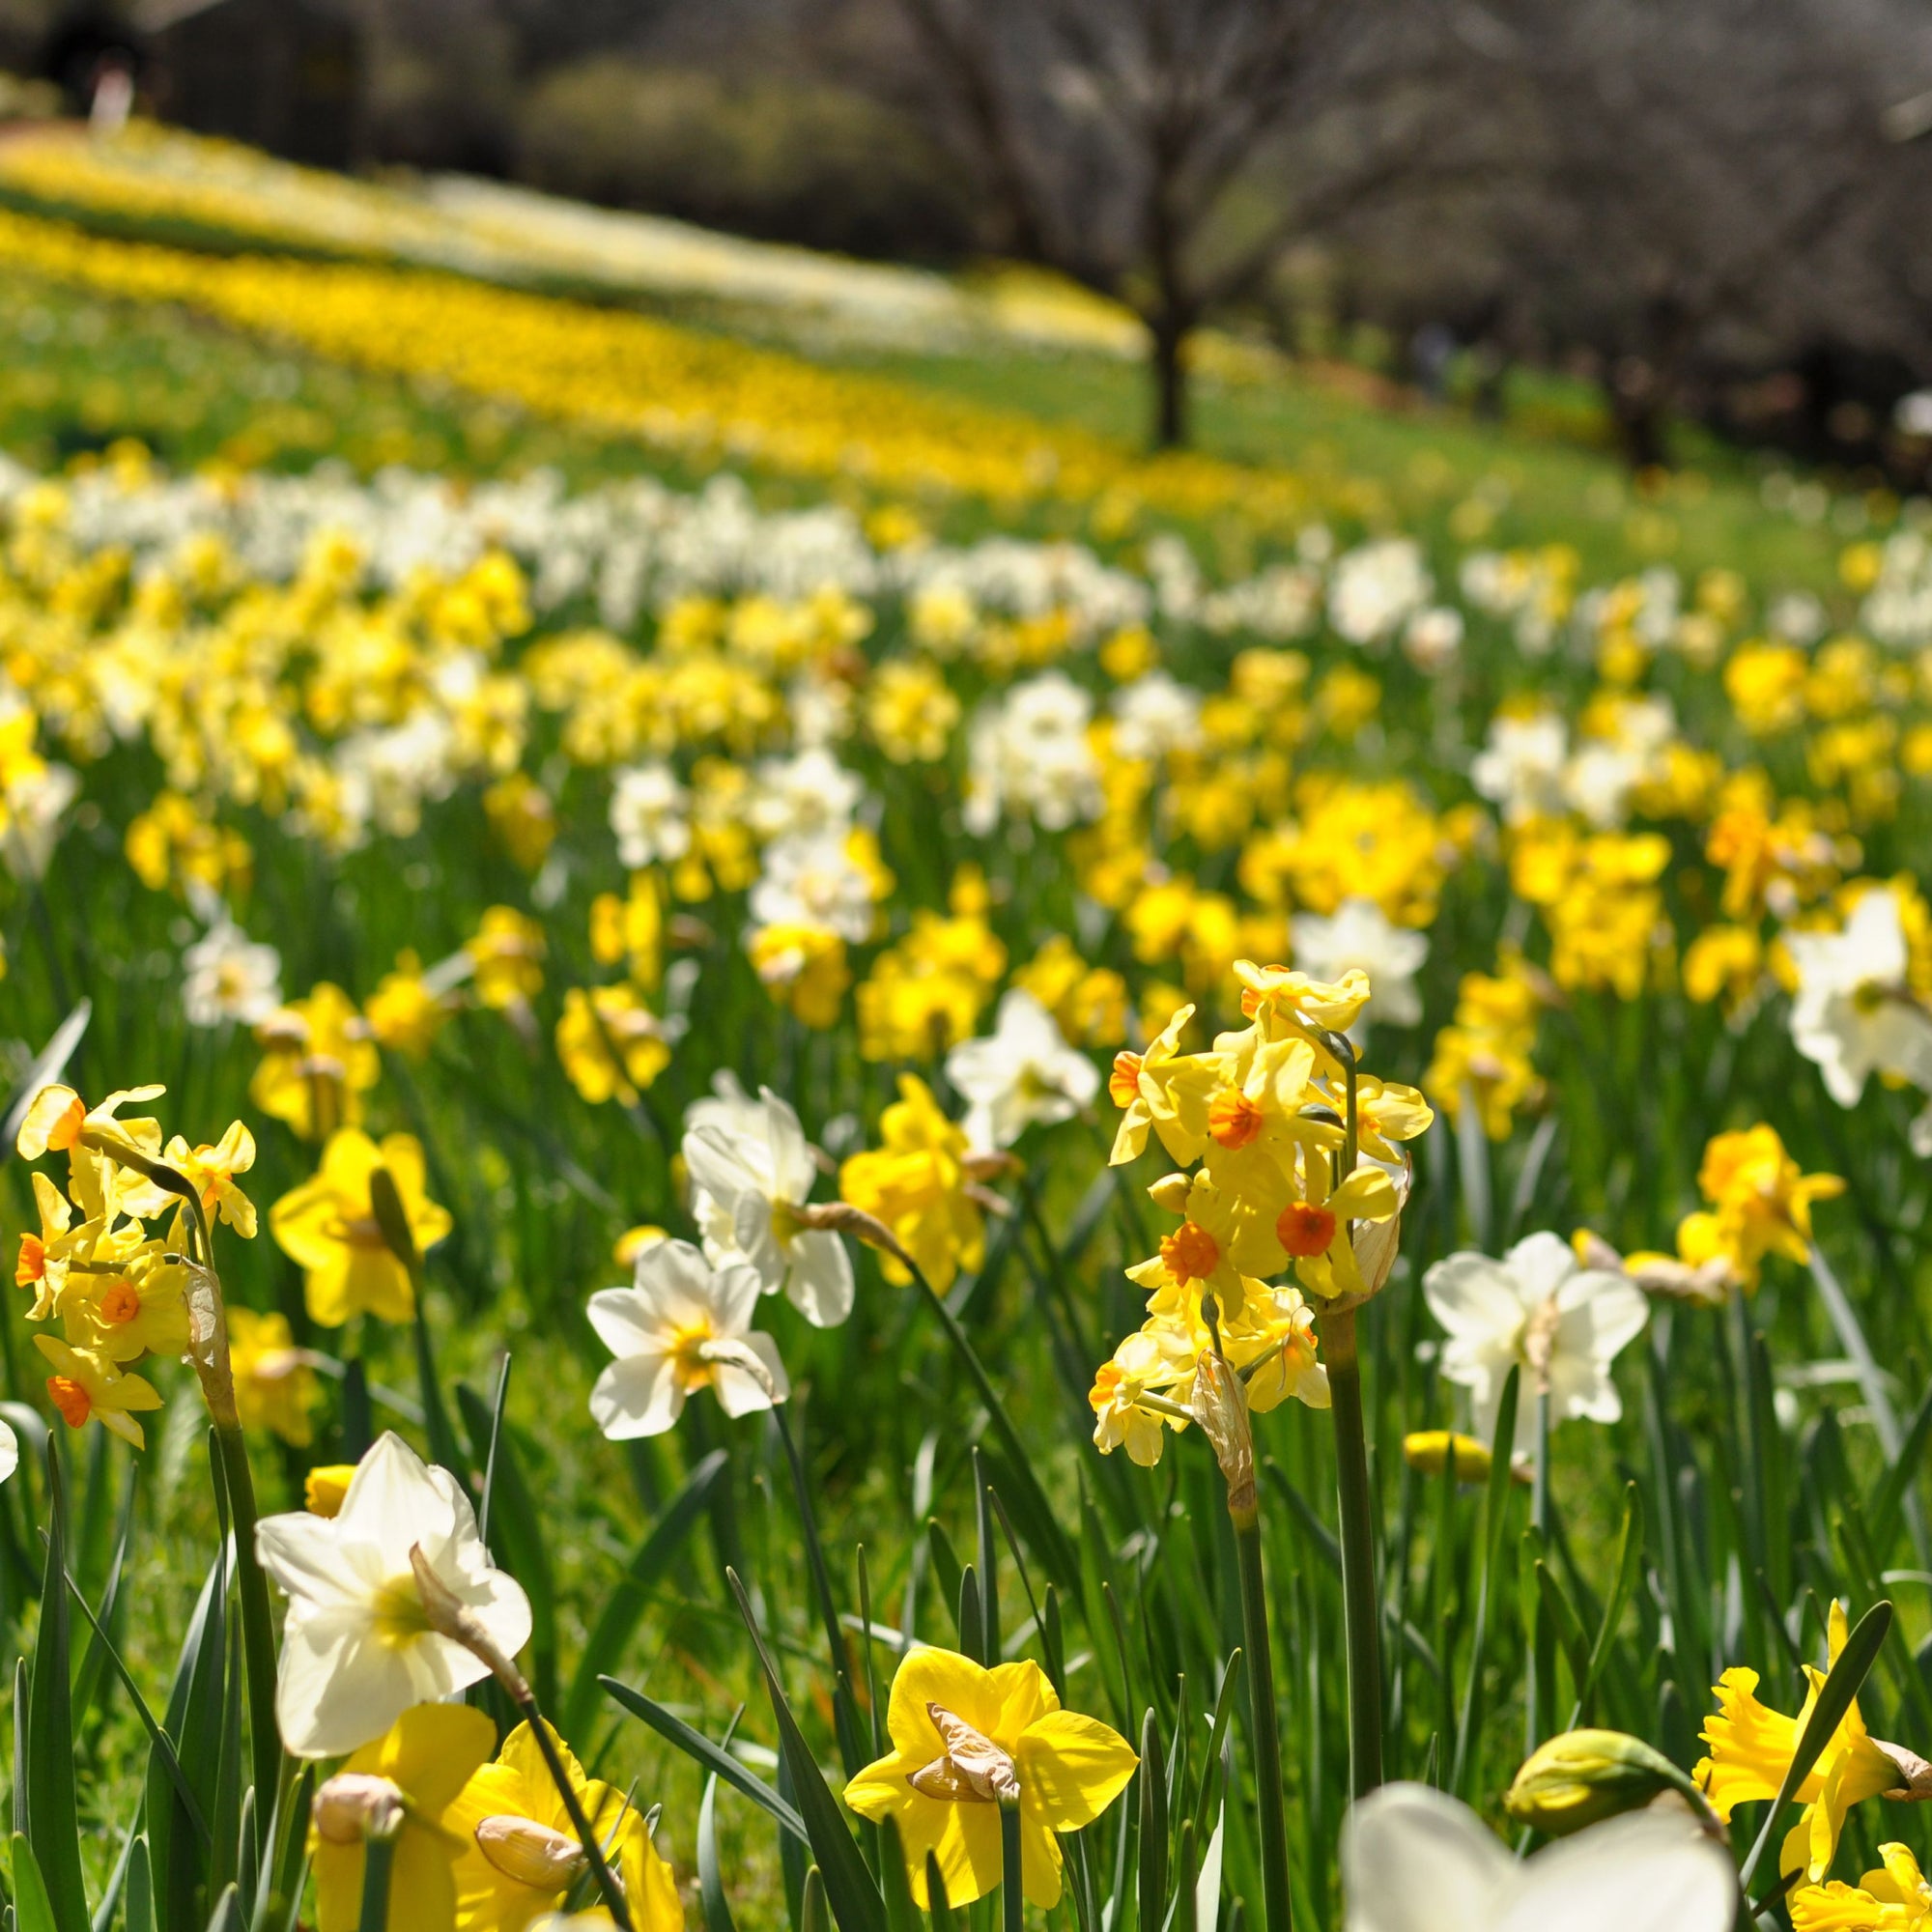 40 Dwarf Daffodil Bulbs Including Scented Daffodils